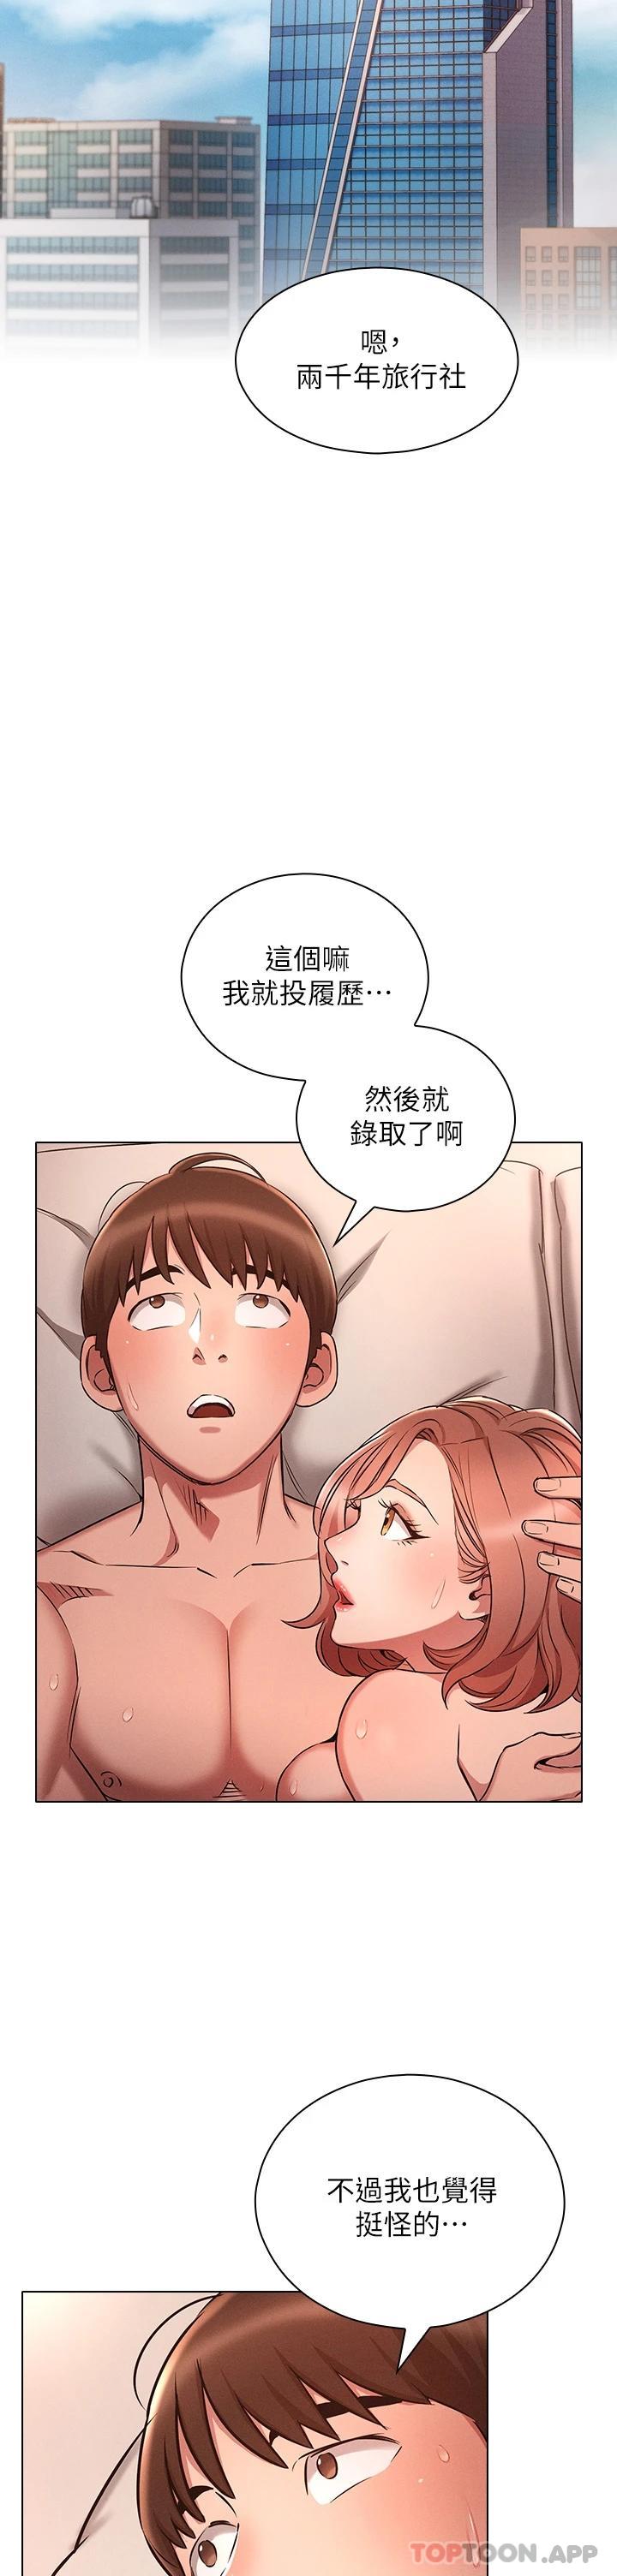 韩国污漫画 魯蛇的多重宇宙 第5话 期待你的「茎」喜 26